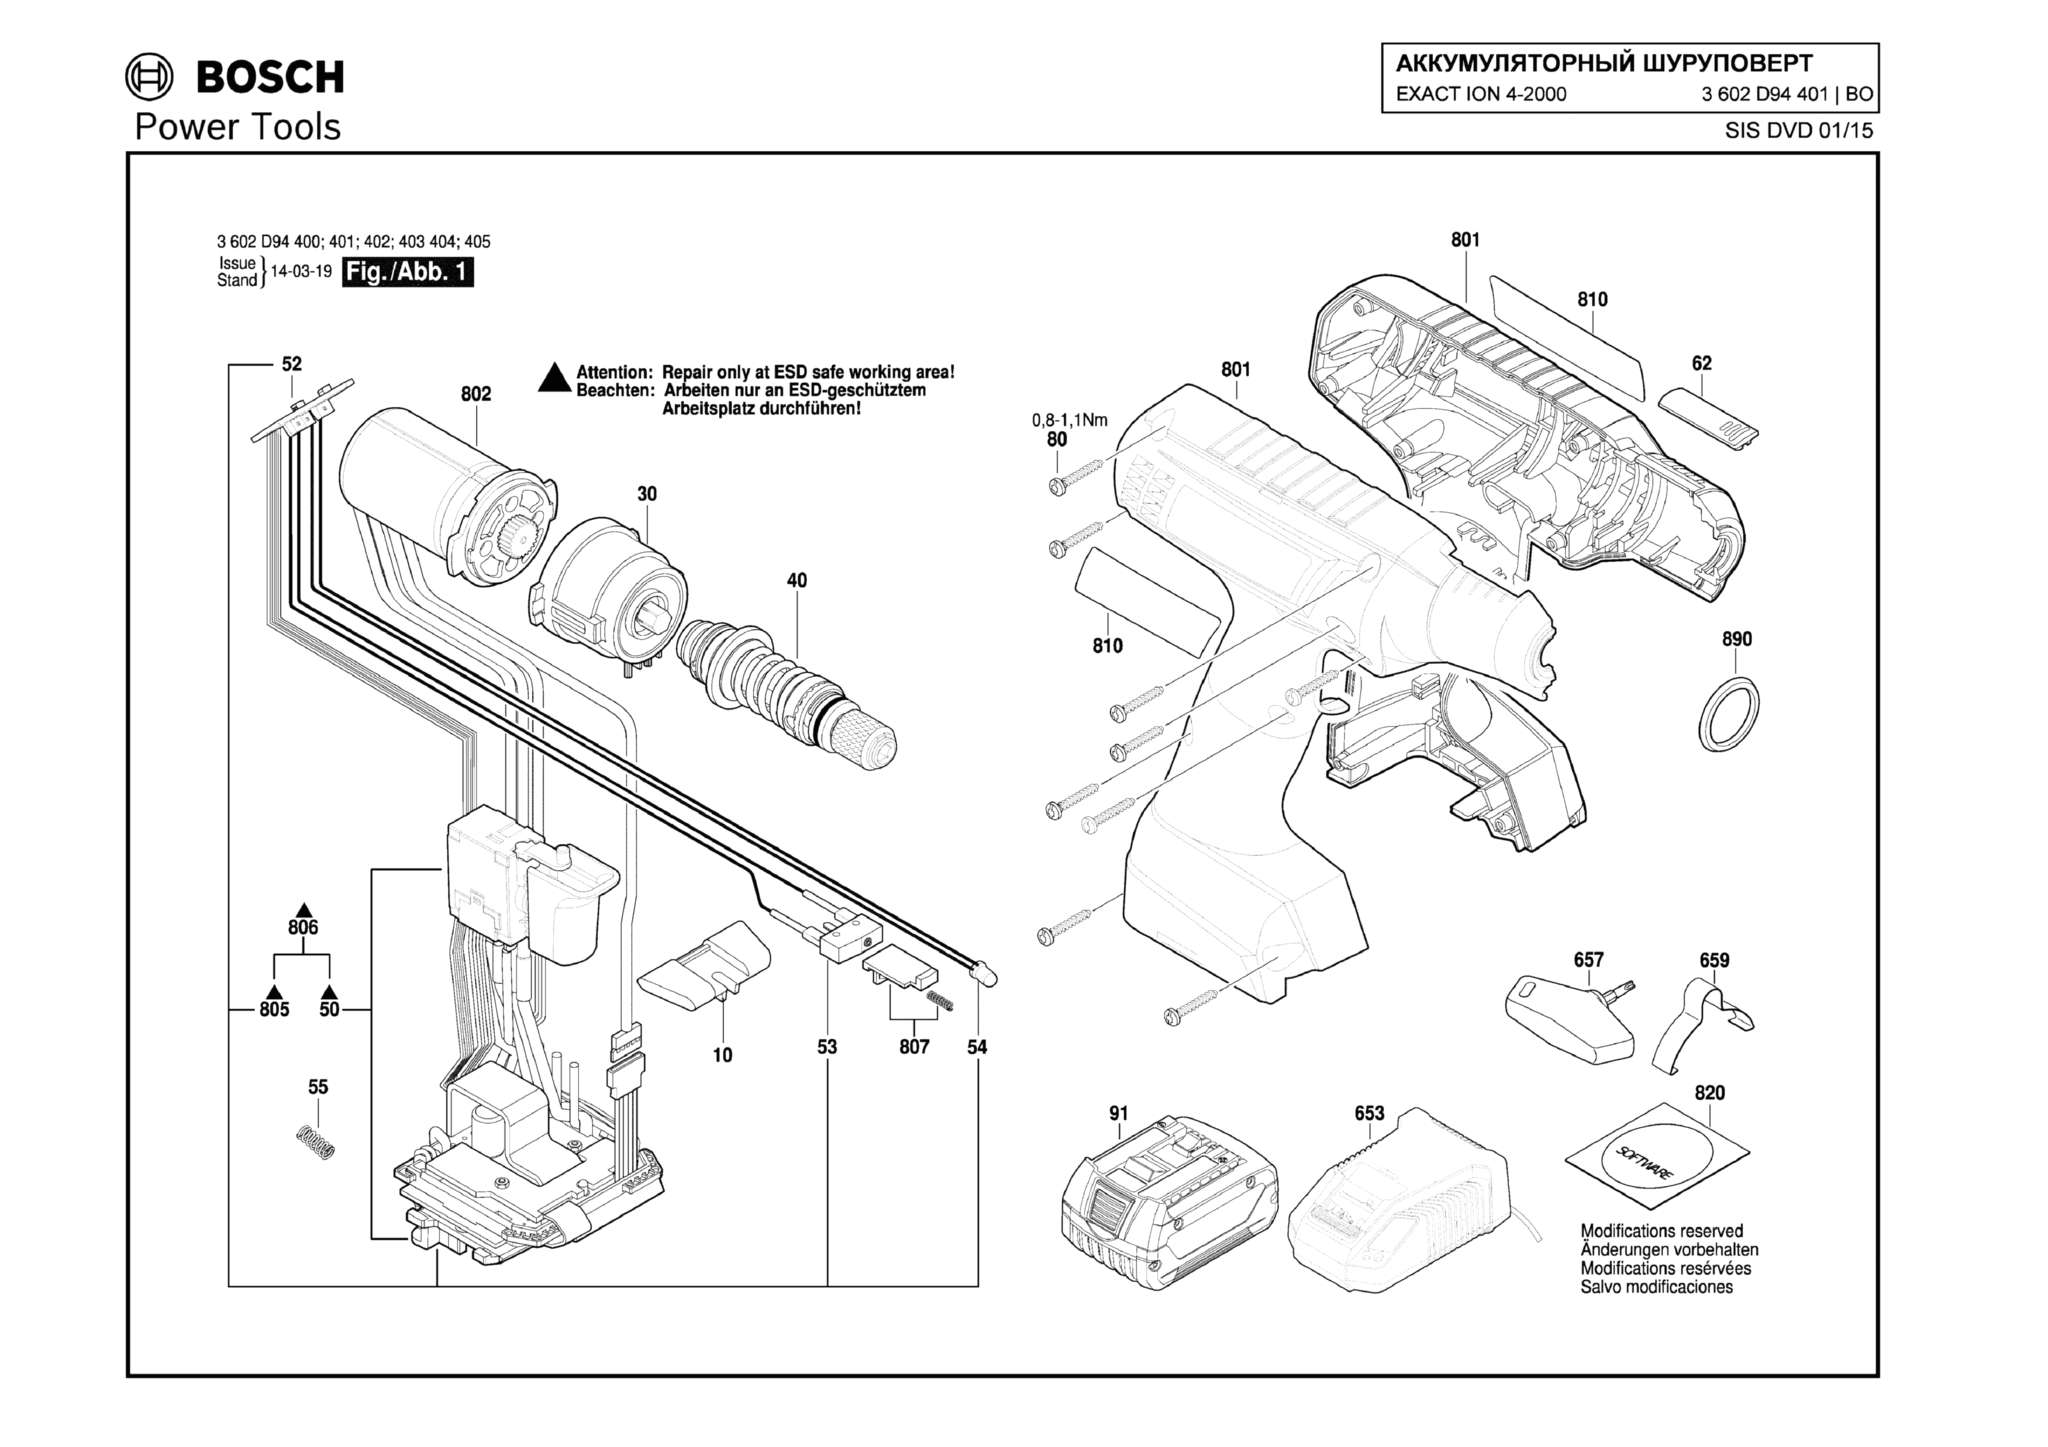 Запчасти, схема и деталировка Bosch EXACT ION 4-2000 (ТИП 3602D94401)